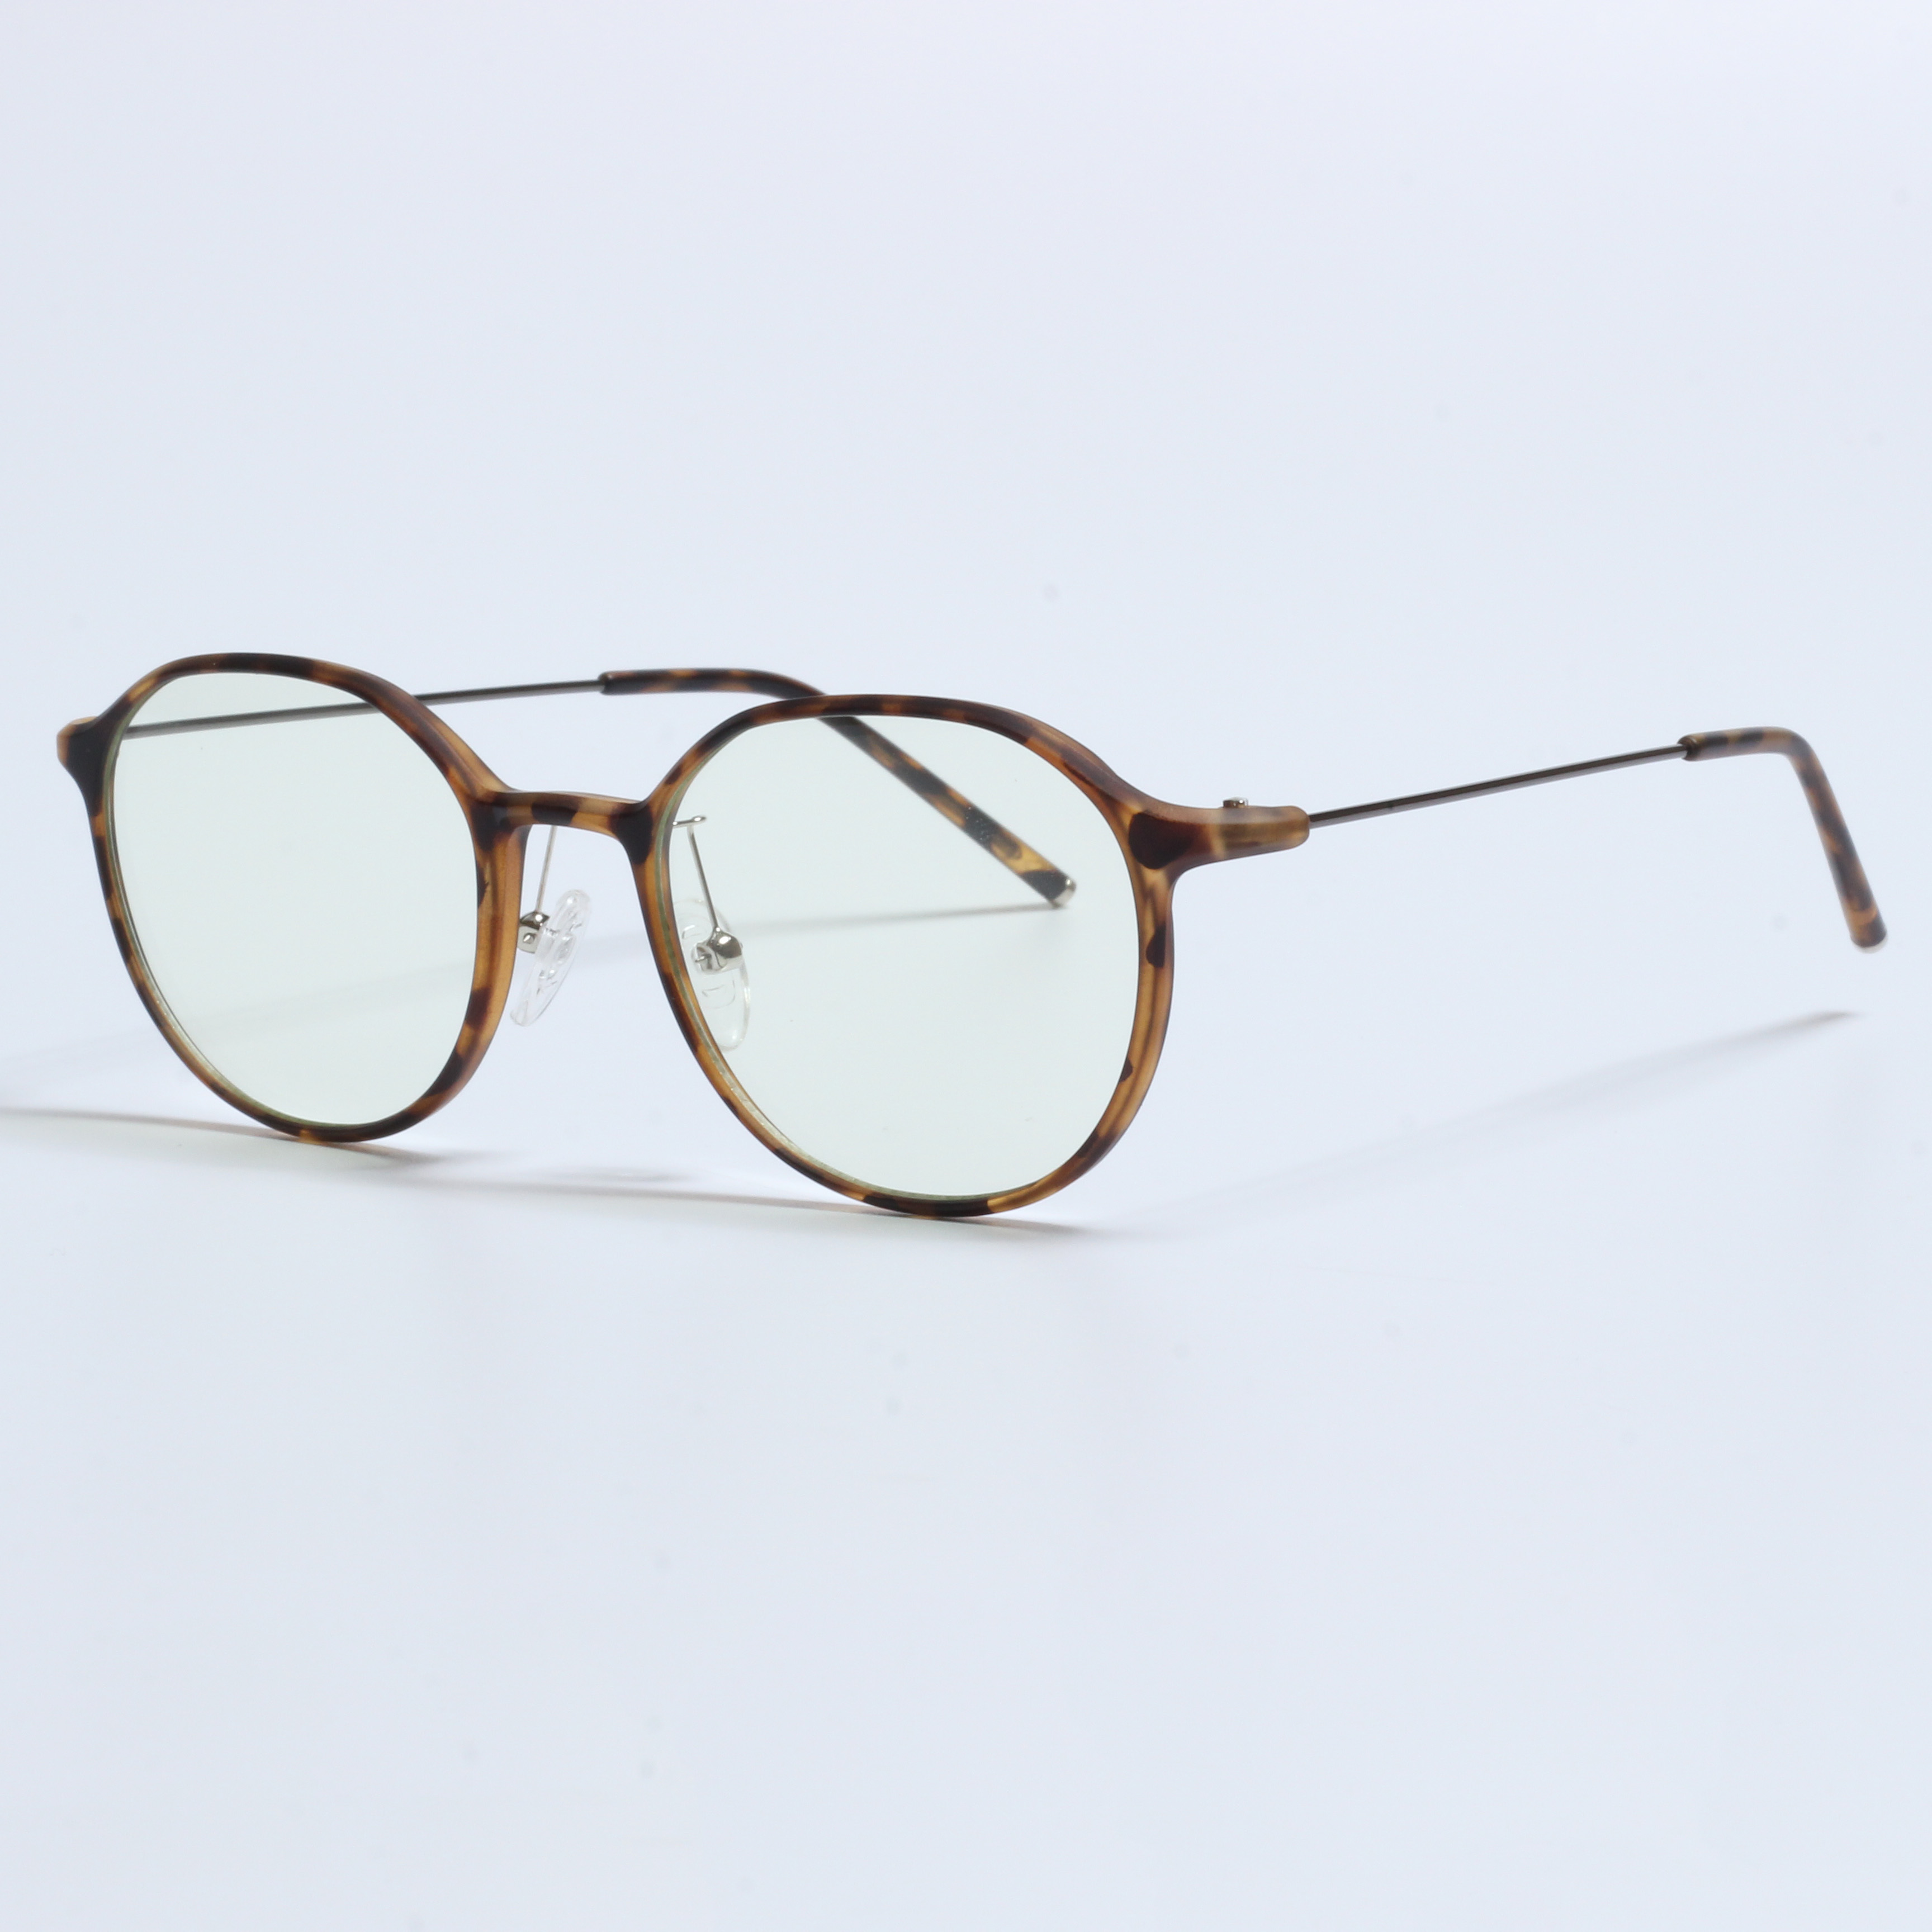 Vintage Thick Gafas Opticas De Hombres átlátszó TR90 keretek (6)